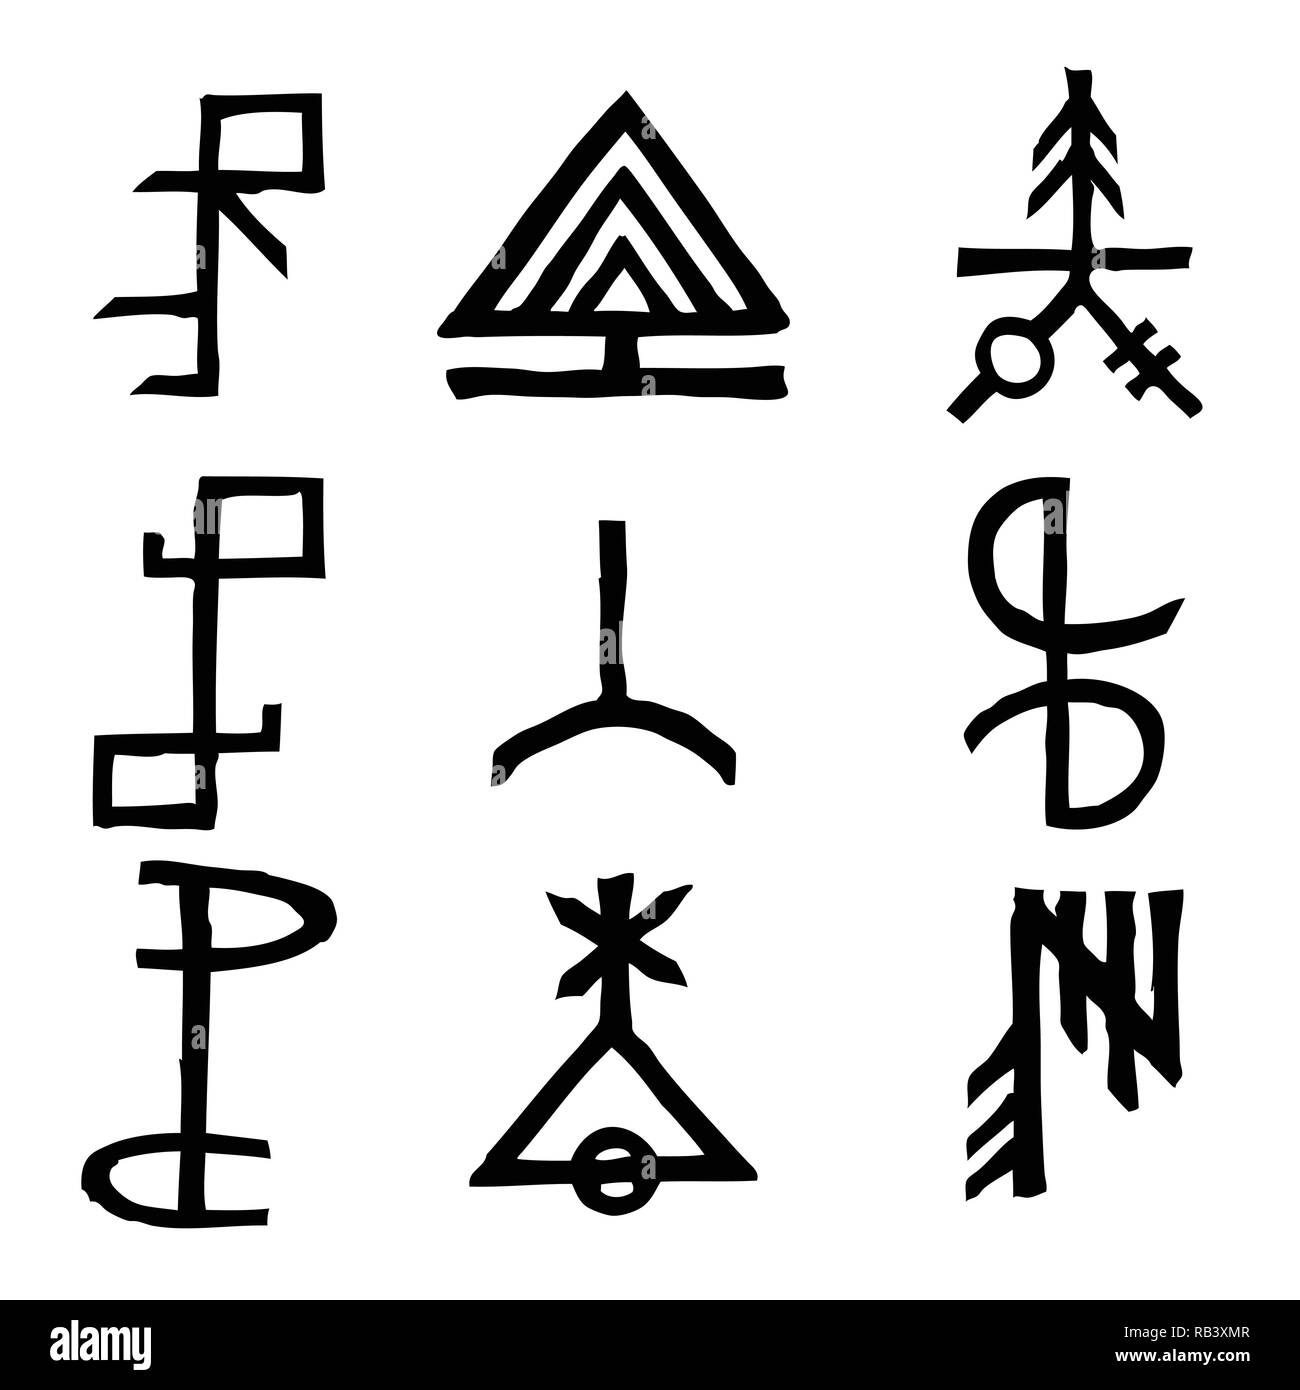 Jeu de runes scandinaves en vieux norrois version imaginaire. Symboles de l'alphabet runique, futhark. Inspiré par d'anciens symboles occultes, des vikings de lettres et de runes. Illustration de Vecteur